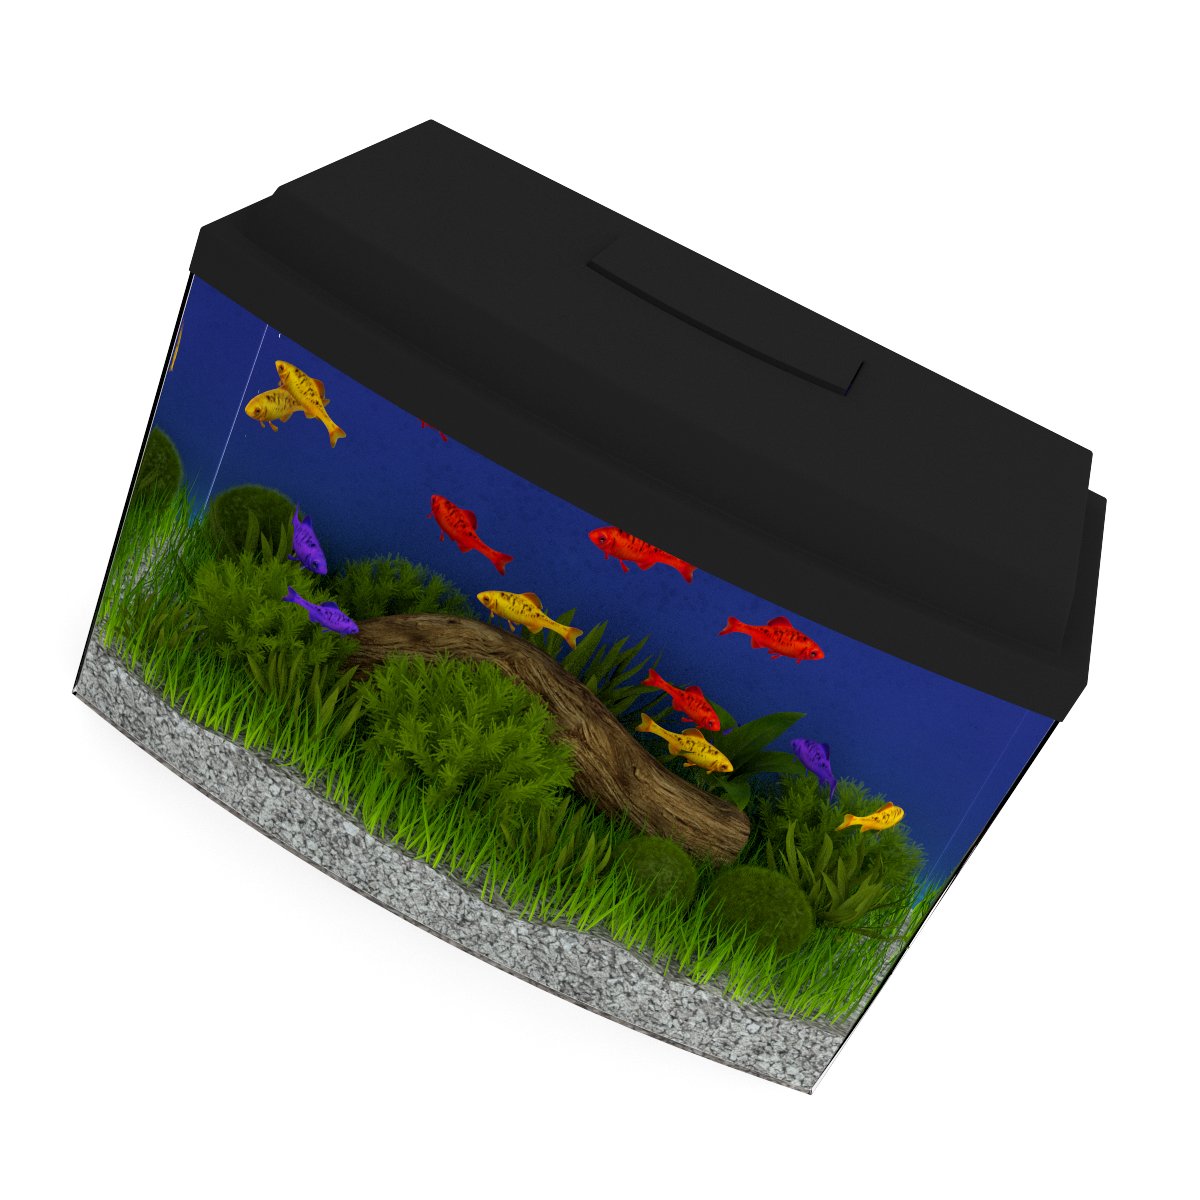 Aquarium bowl 3D model